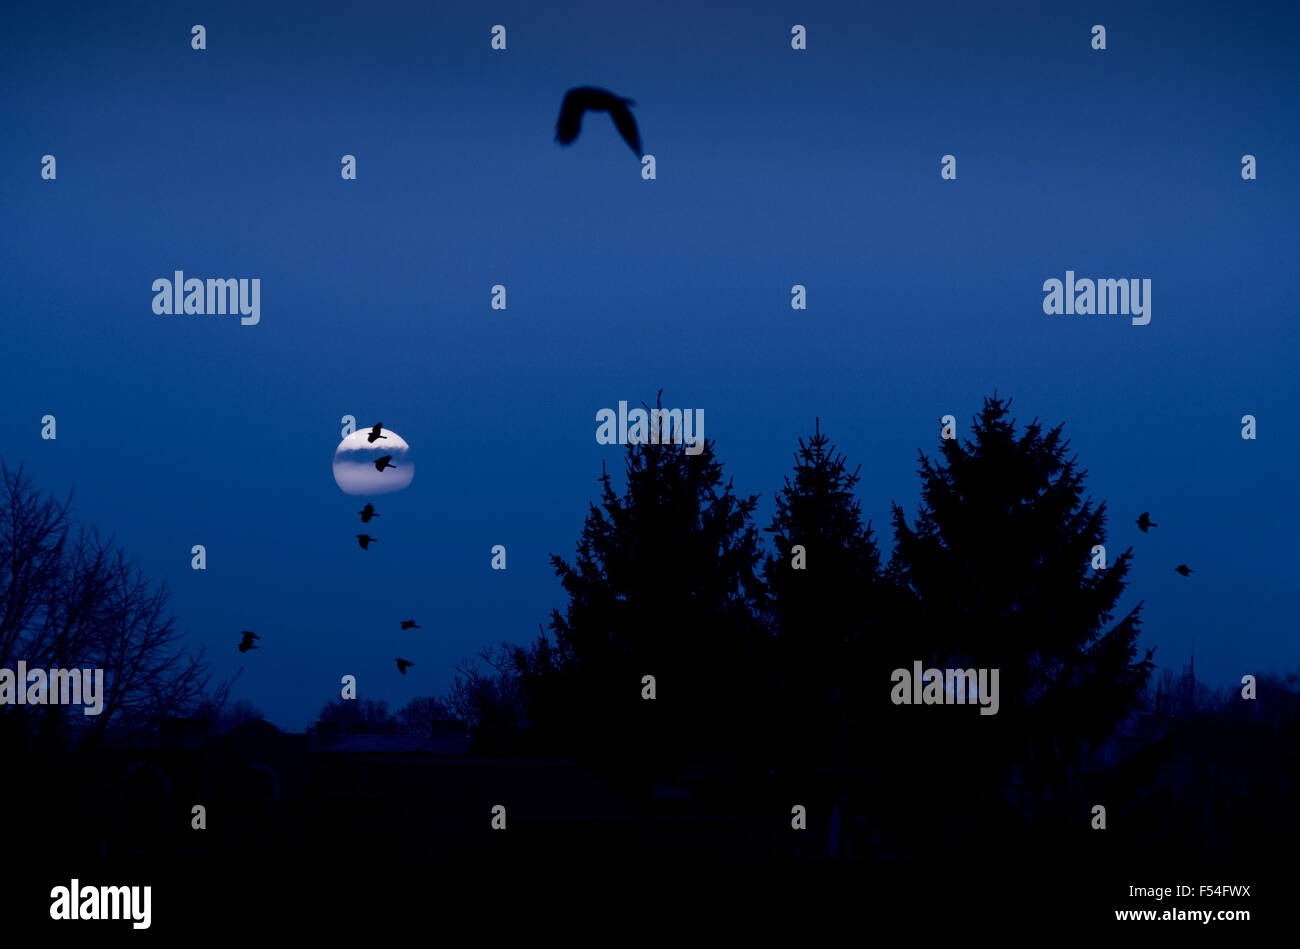 Vollmond Krähen Silhouette, Vögel fliegen über Bäume im dunklen Halloween gruselige Szenerie in Mitternacht, Abenddämmerung Landschaft... Stockfoto